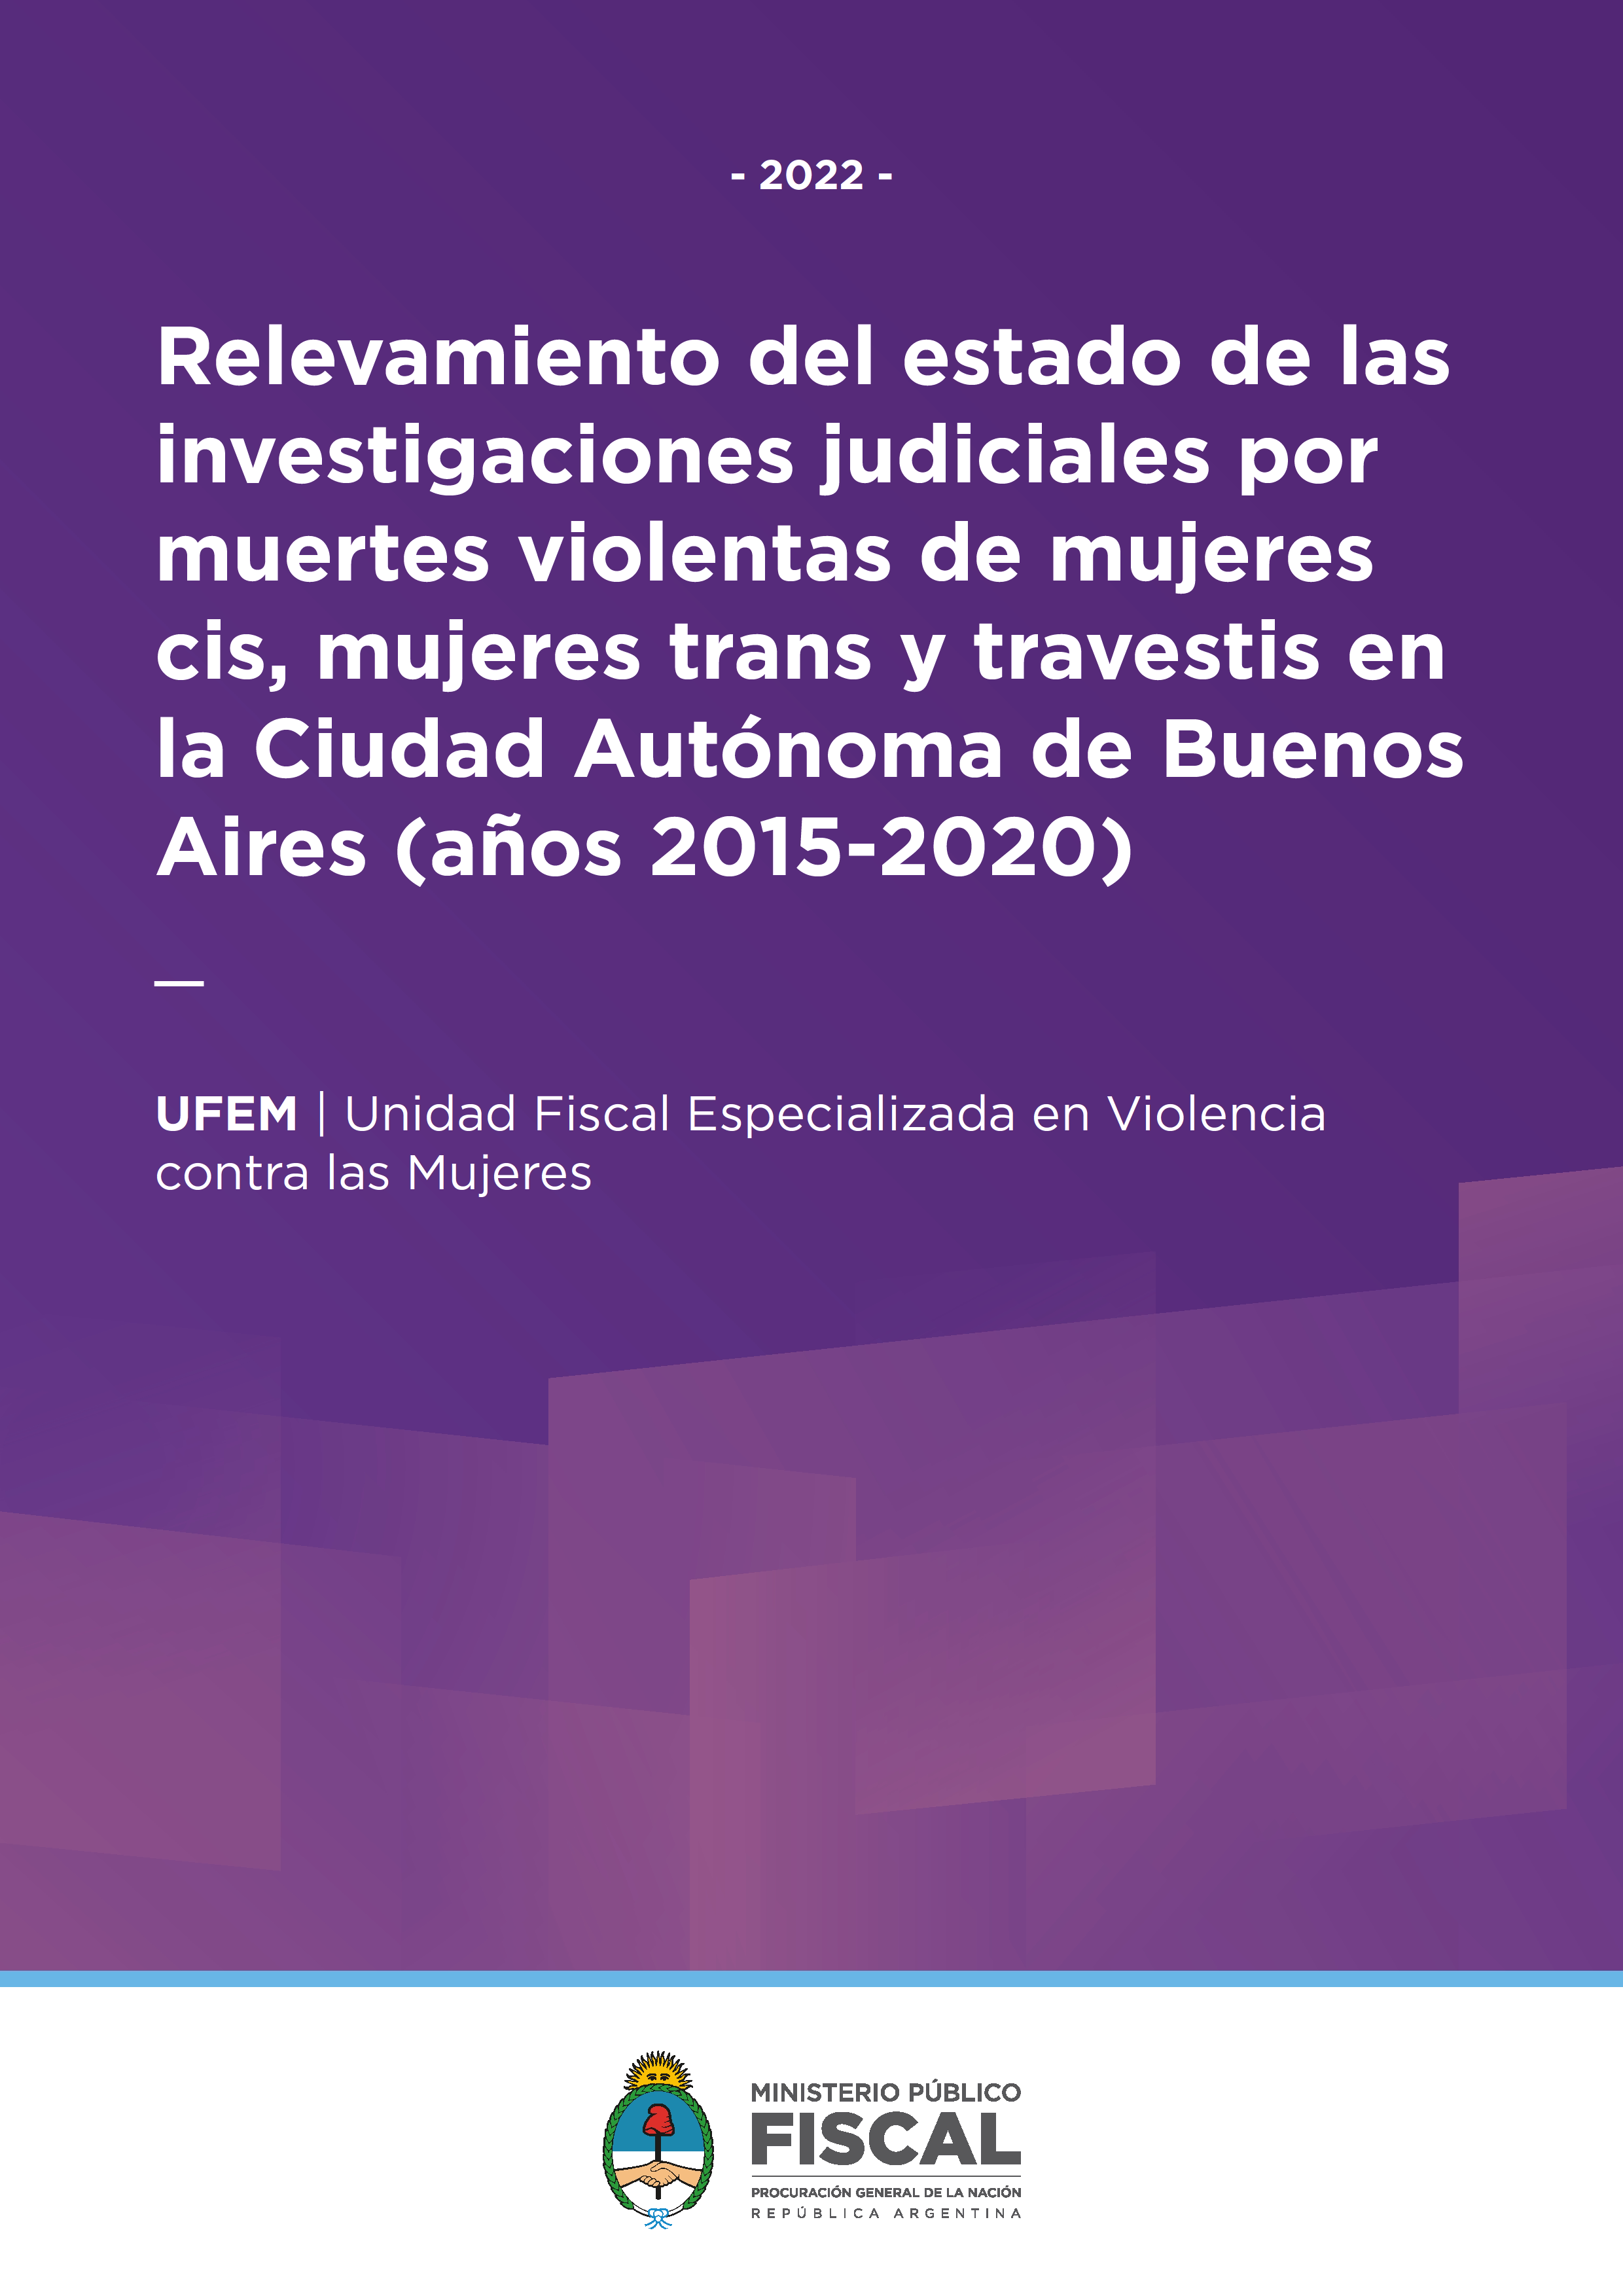 Relevamiento del estado de las investigaciones judiciales por muertes violentas de mujeres cis, mujeres trans y travestis en la Ciudad Autónoma de Buenos Aires (años 2015-2020)